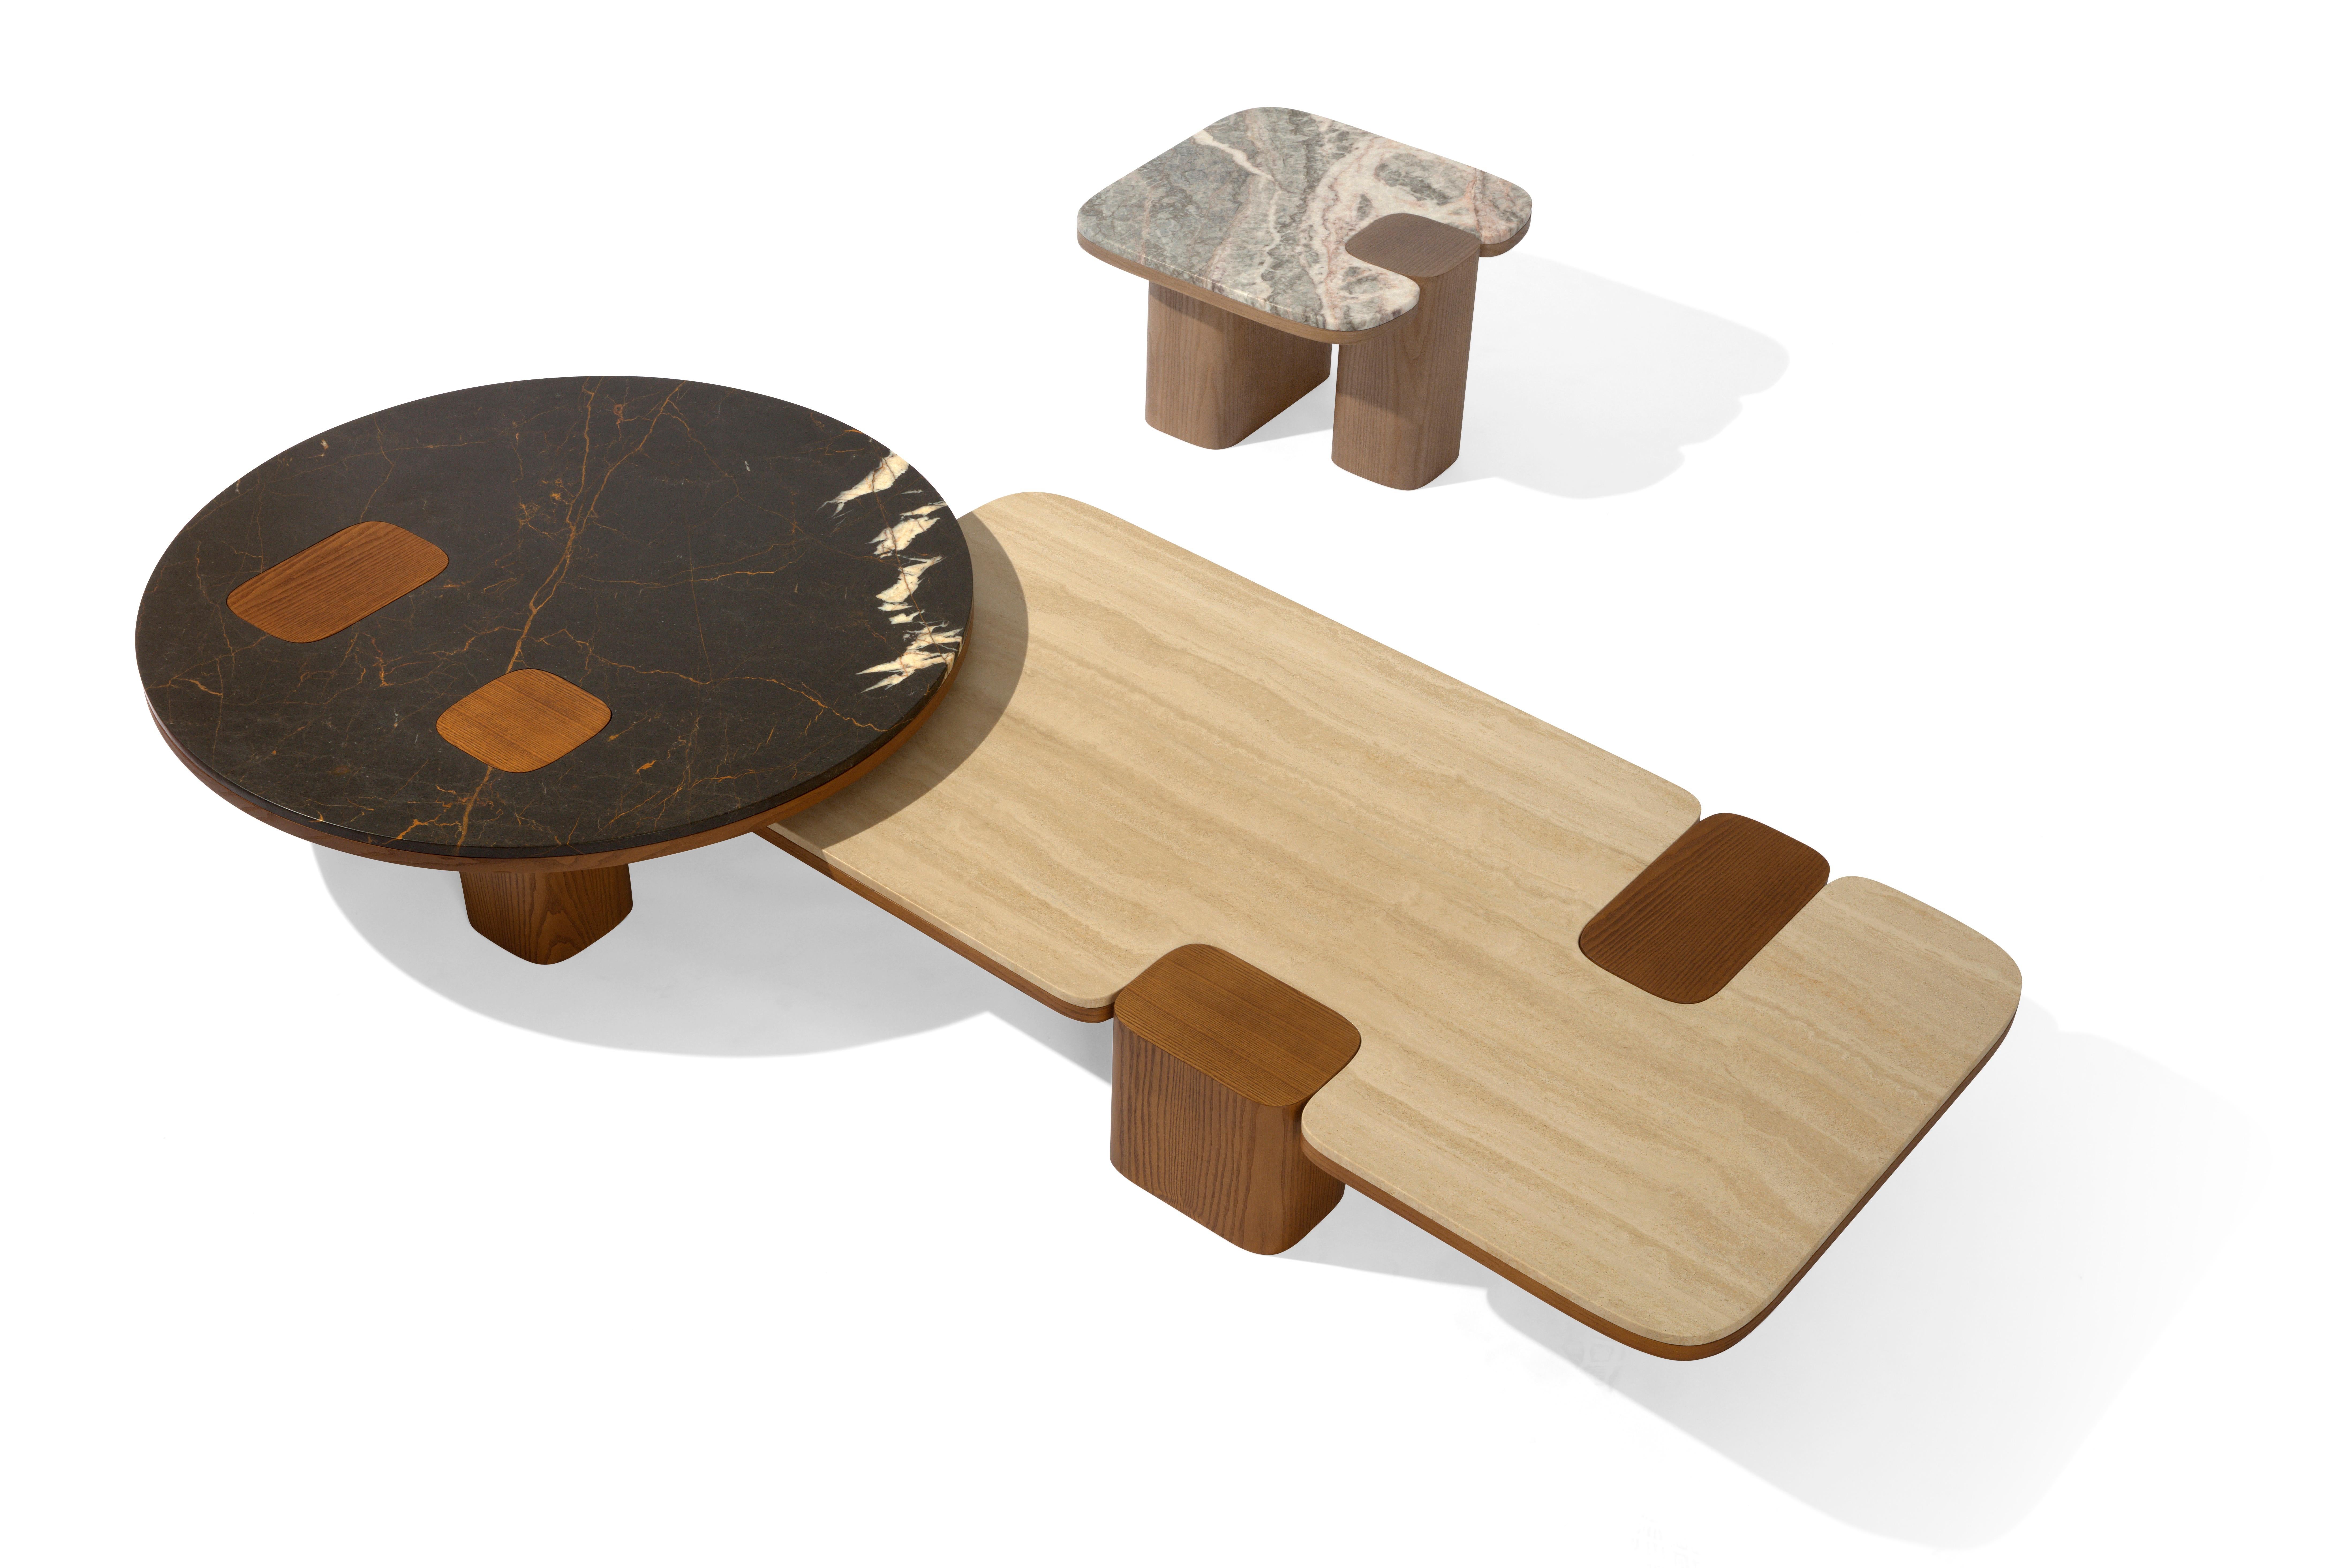 Cette table basse carrée exceptionnelle donnera une touche plus contemporaine et moderne à votre salon. La structure est entièrement en bois de frêne massif et le plateau en marbre s'intègre parfaitement dans un environnement luxueux, donnant un